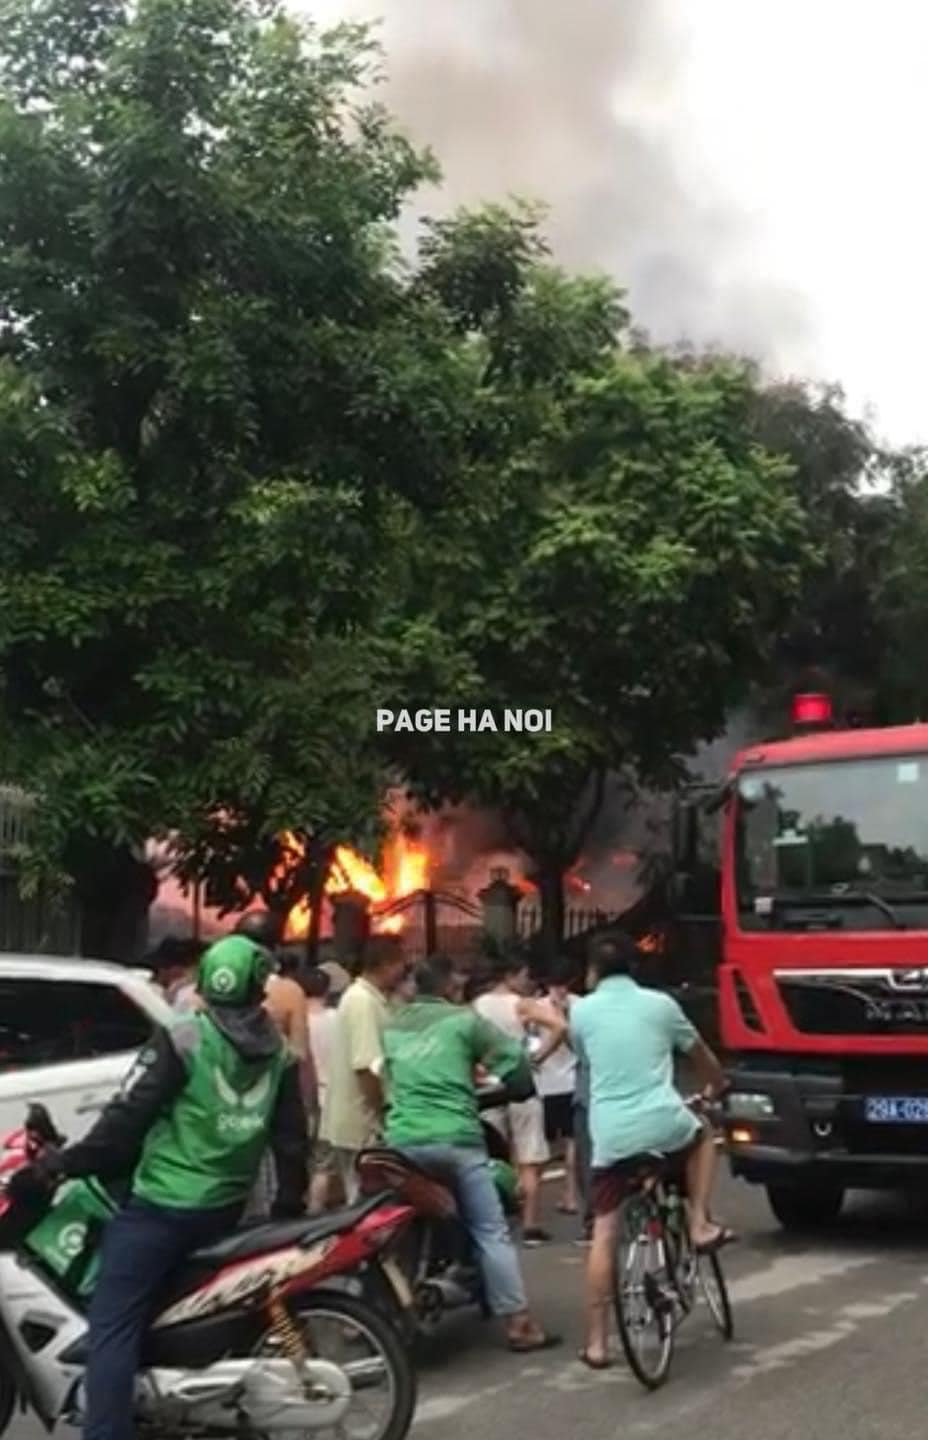 Cháy biệt thự ở Khu đô thị Pháp Vân, 1 chiến sĩ Cảnh sát PCCC bị thương - ảnh 1